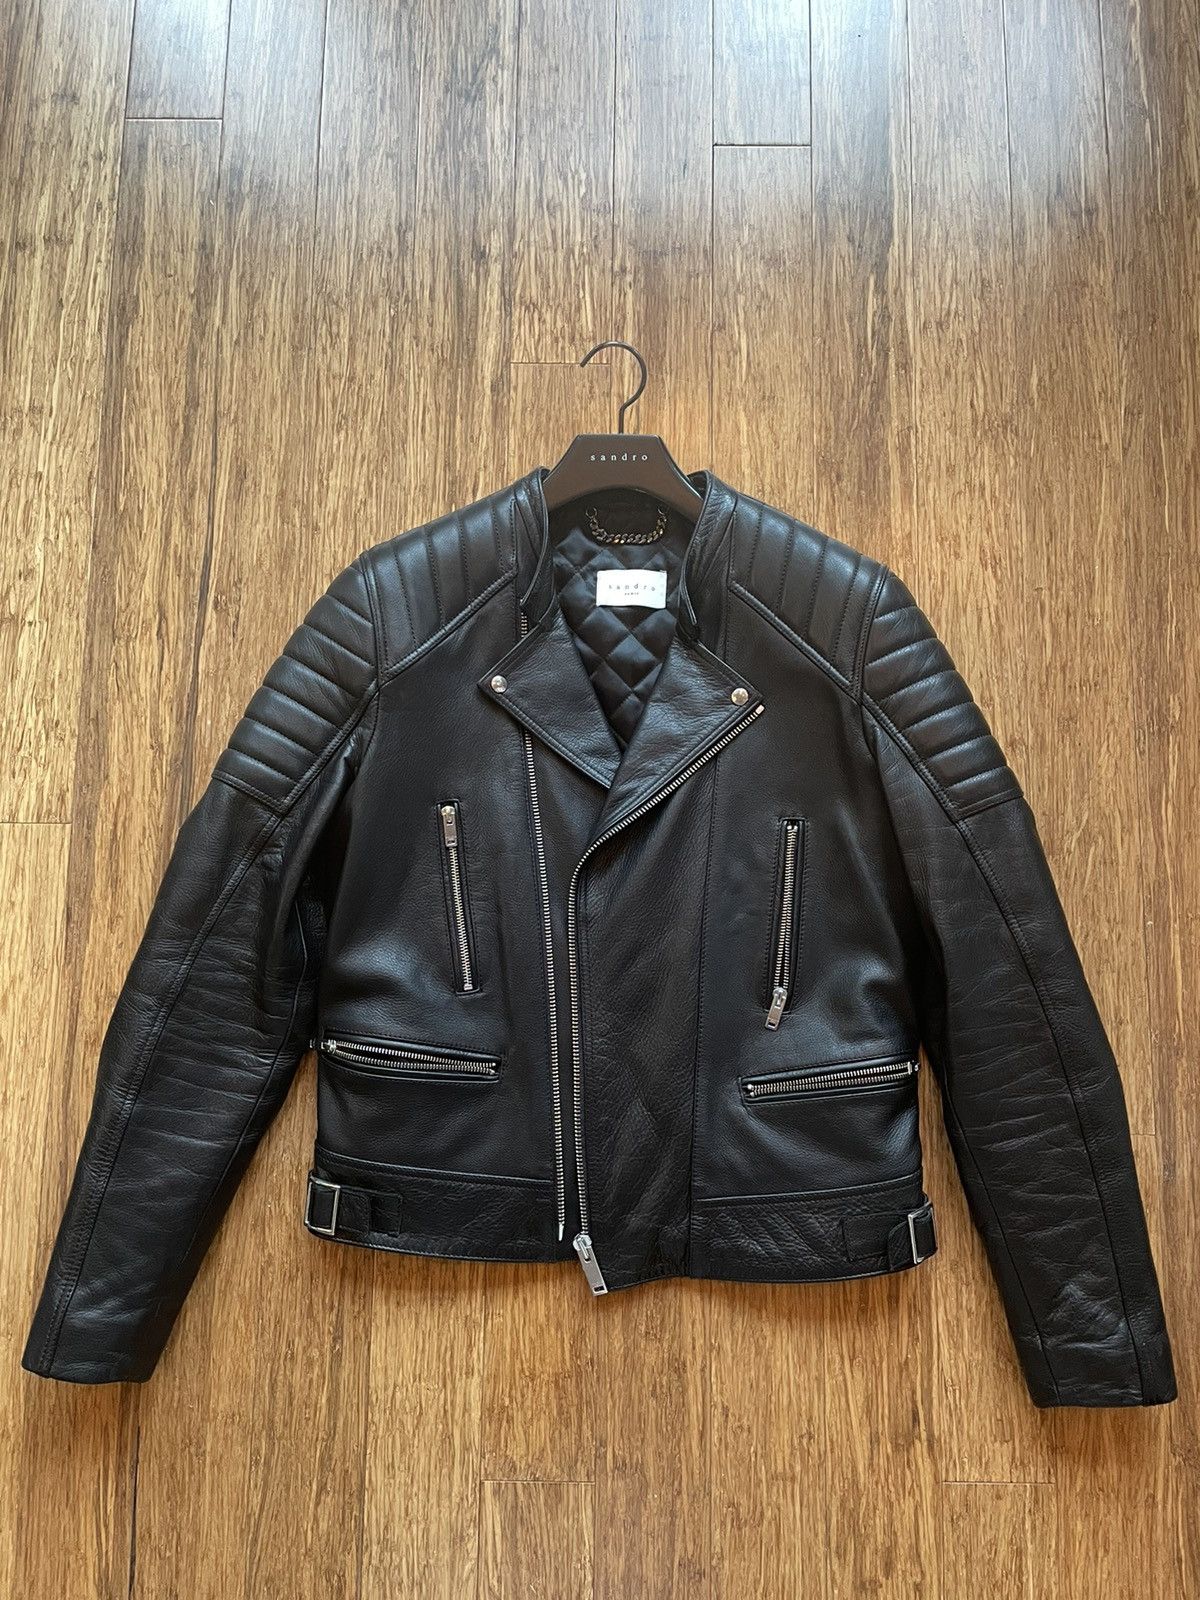 Sandro Sandro leather biker jacket | Grailed